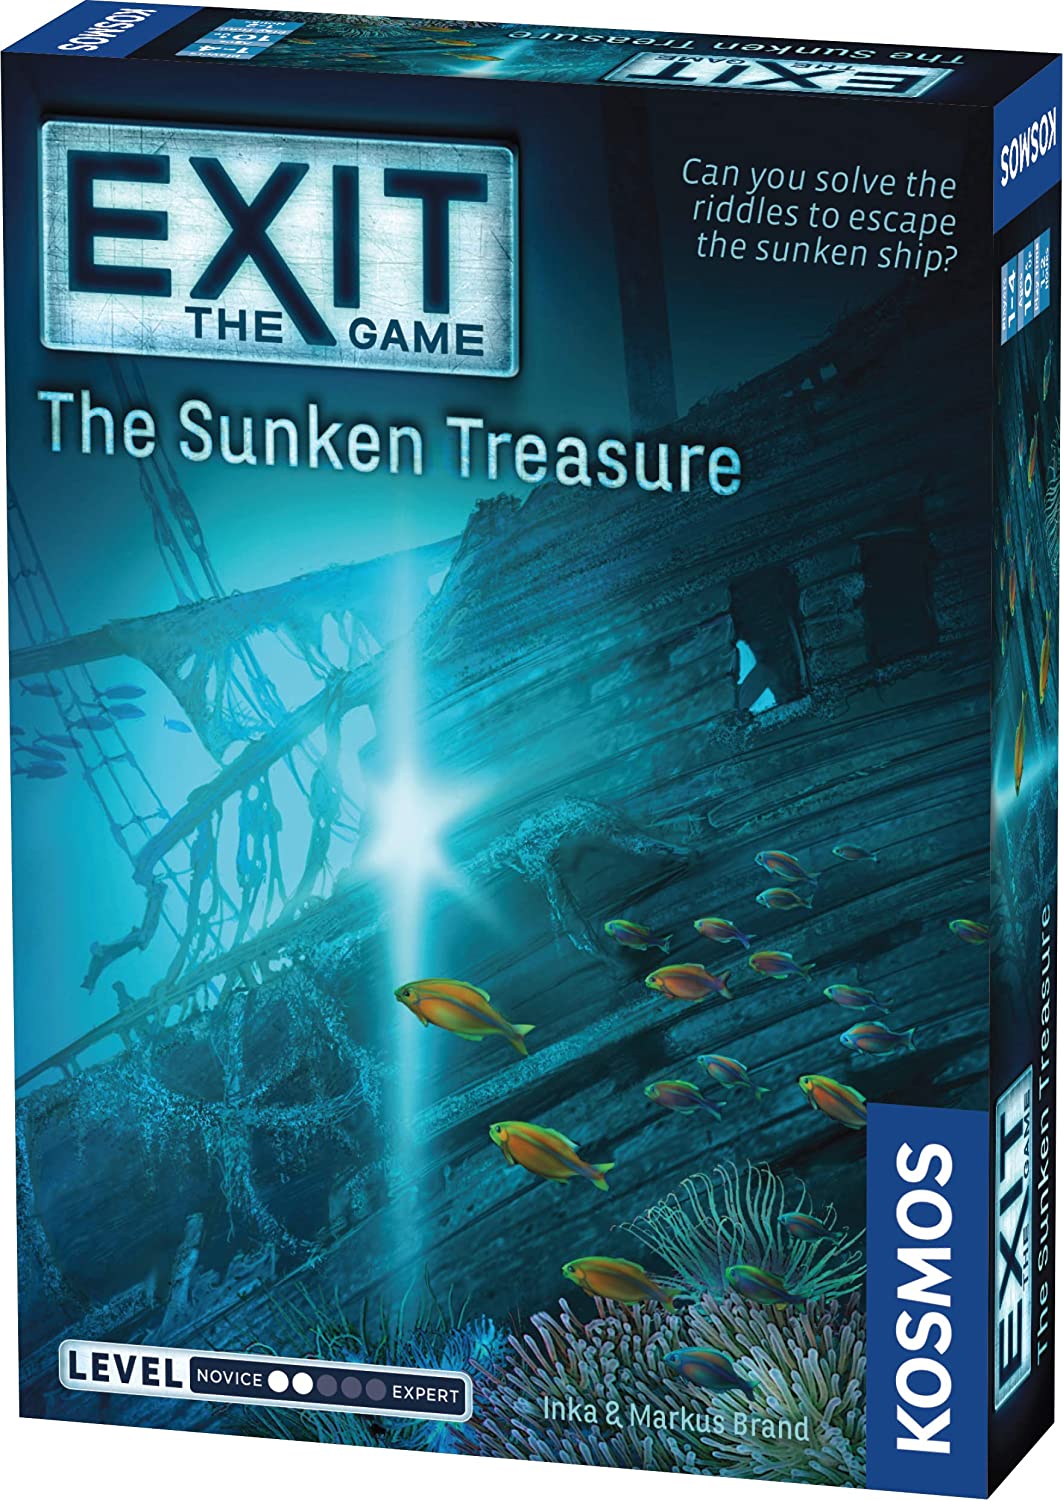 Exit The Sunken Treasure